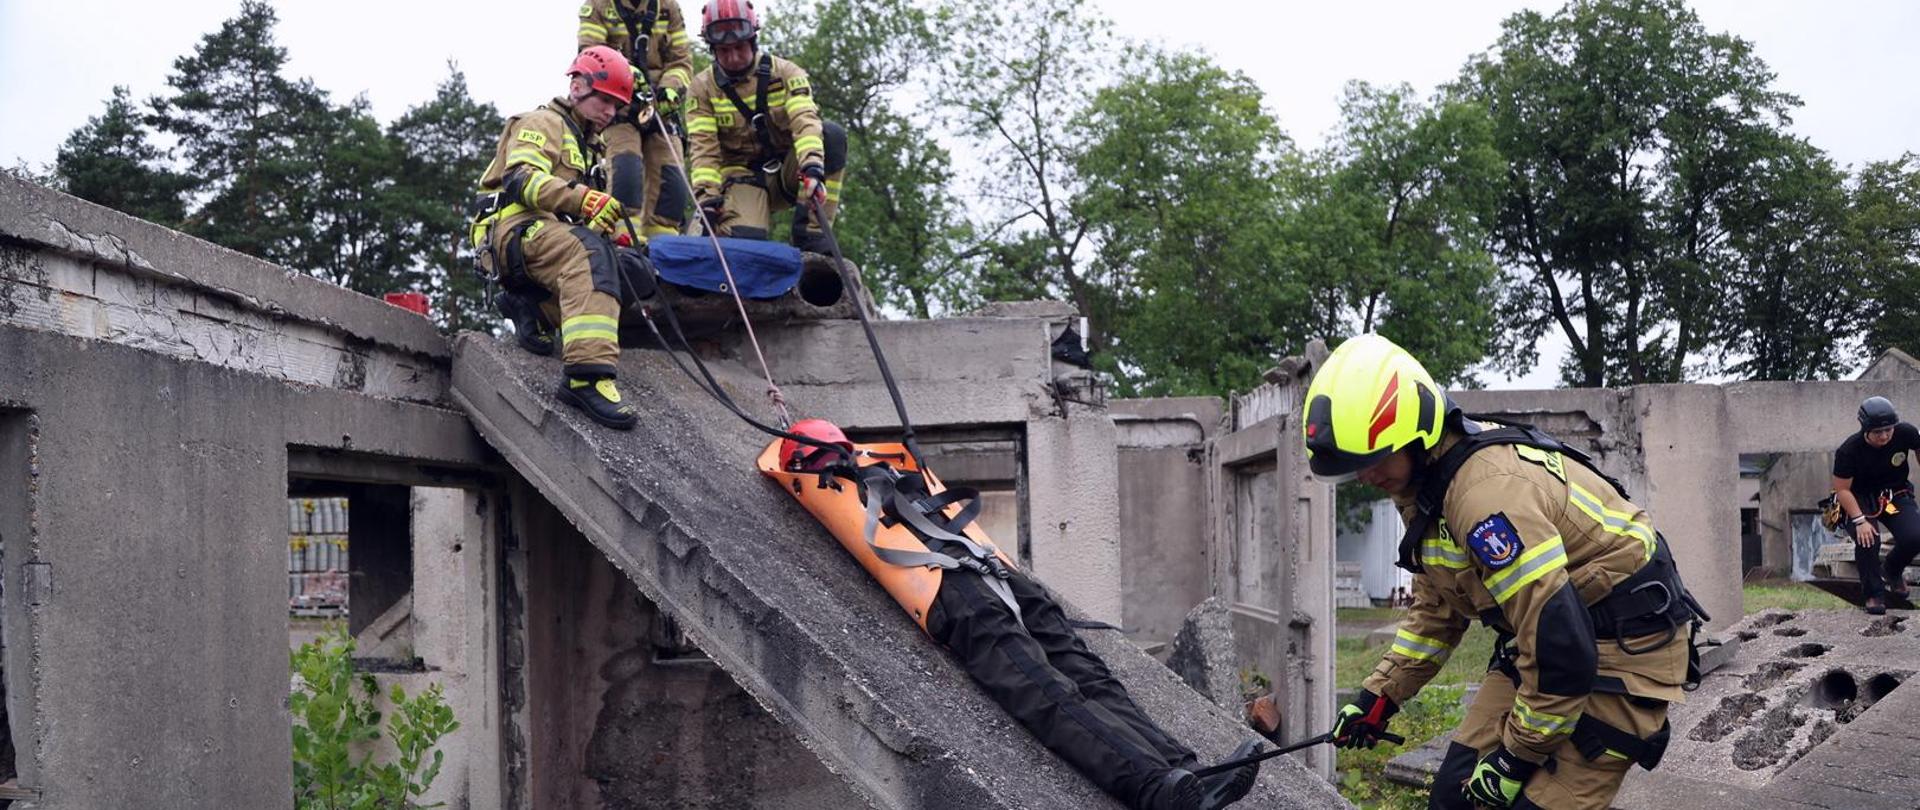 Ćwiczący strażacy ewakuują z gruzowiska na noszach SKED osobę poszkodowaną (symulowaną przez fantom ratowniczy)